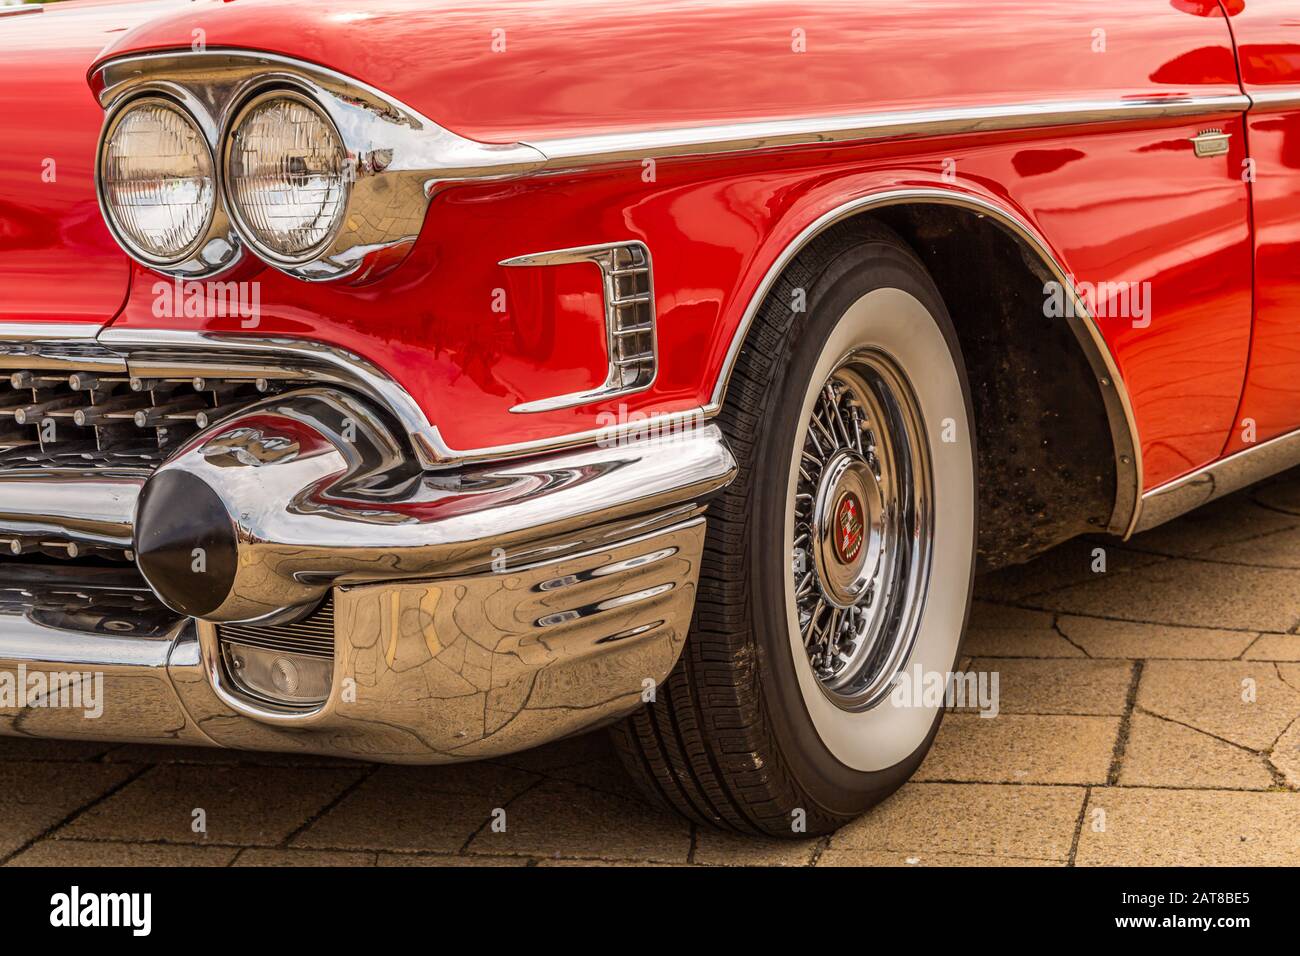 1958 Cadillac Stockfoto